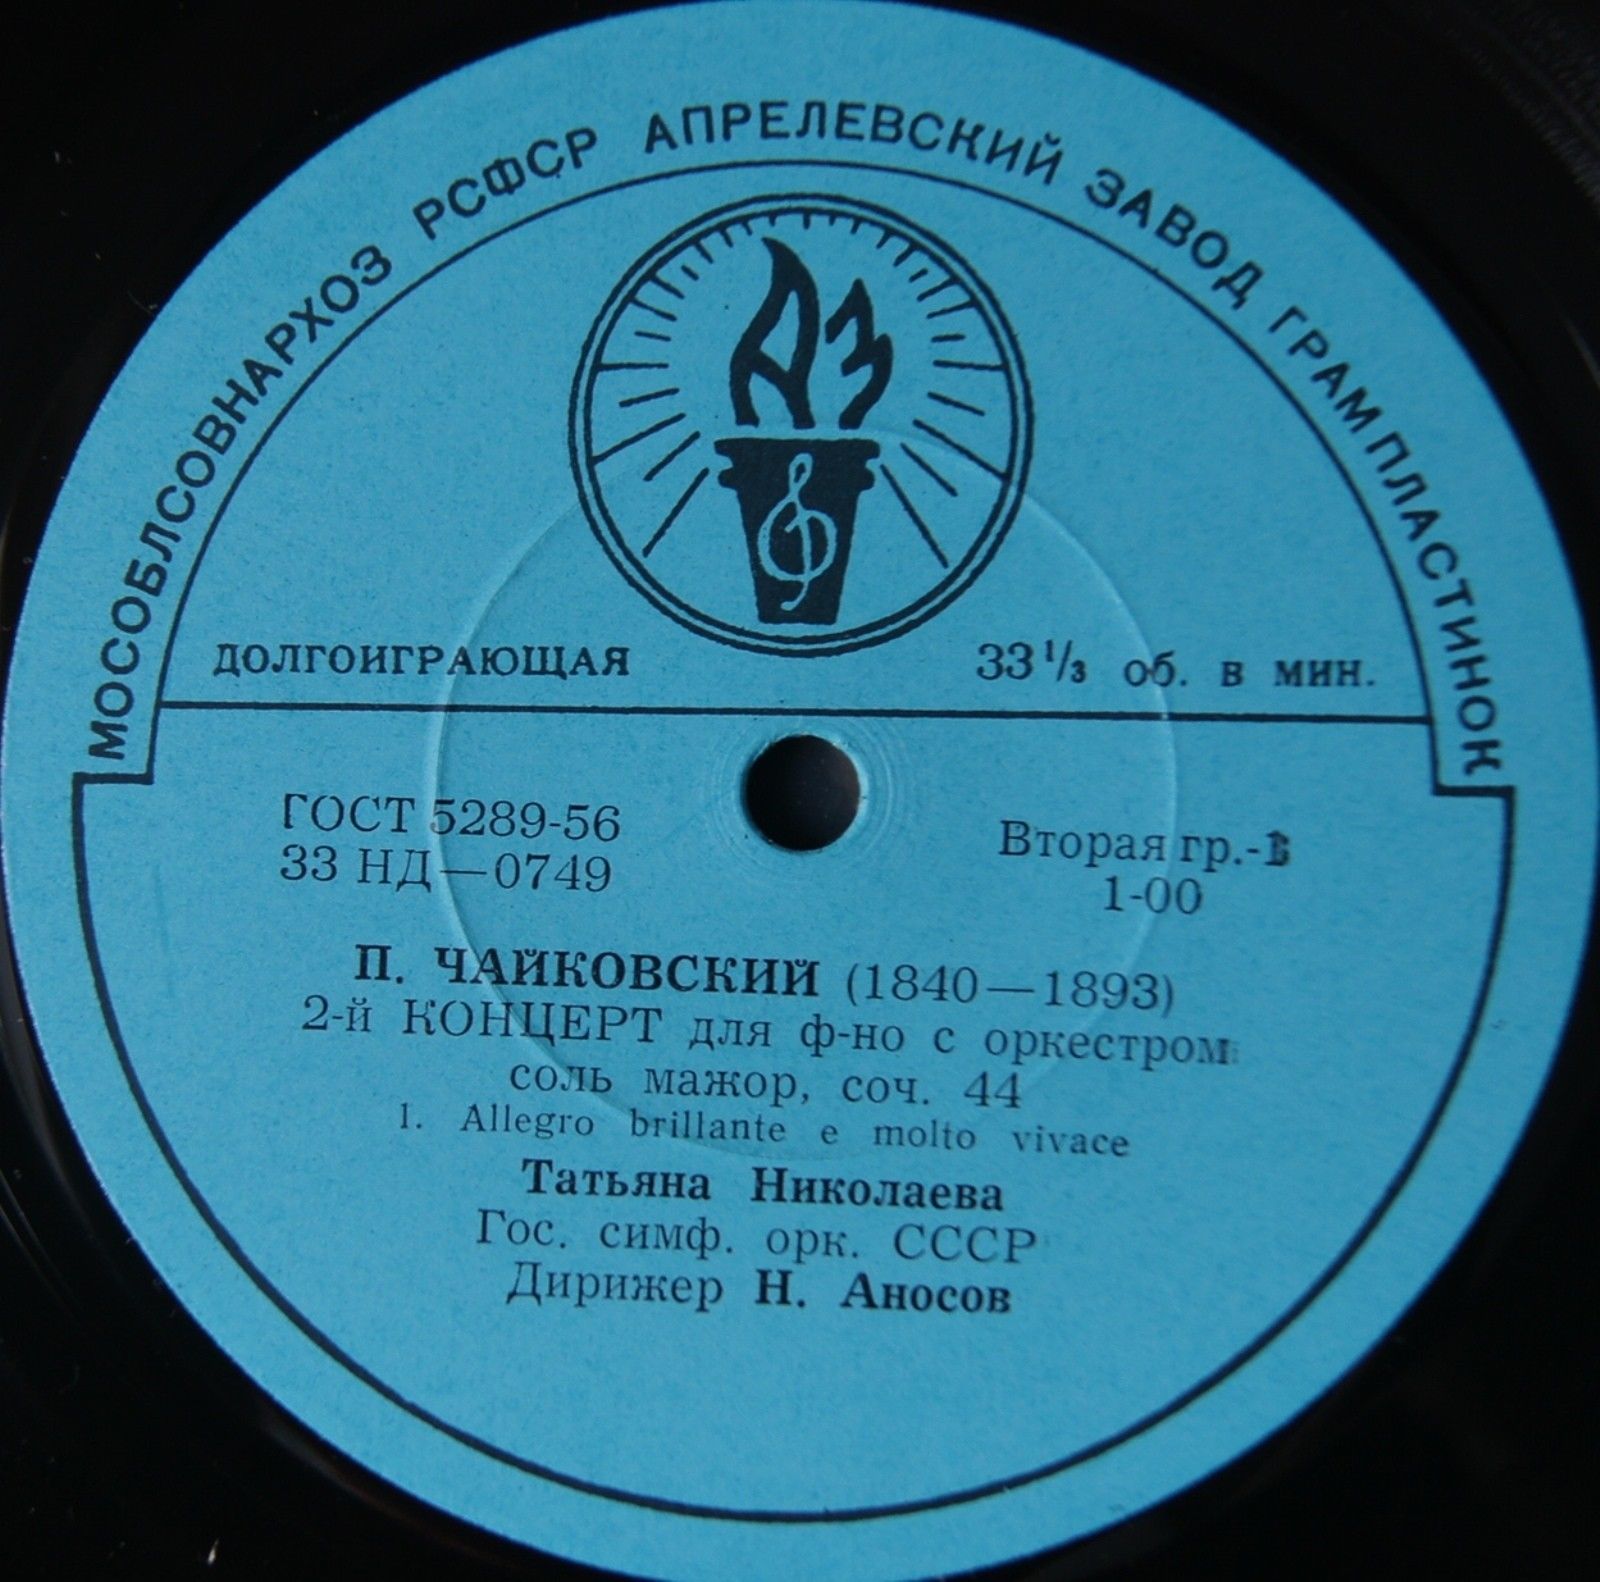 П. ЧАЙКОВСКИЙ (1840–1893): Концерт №2 для фортепиано с оркестром  (Т. Николаева, Н. Аносов)